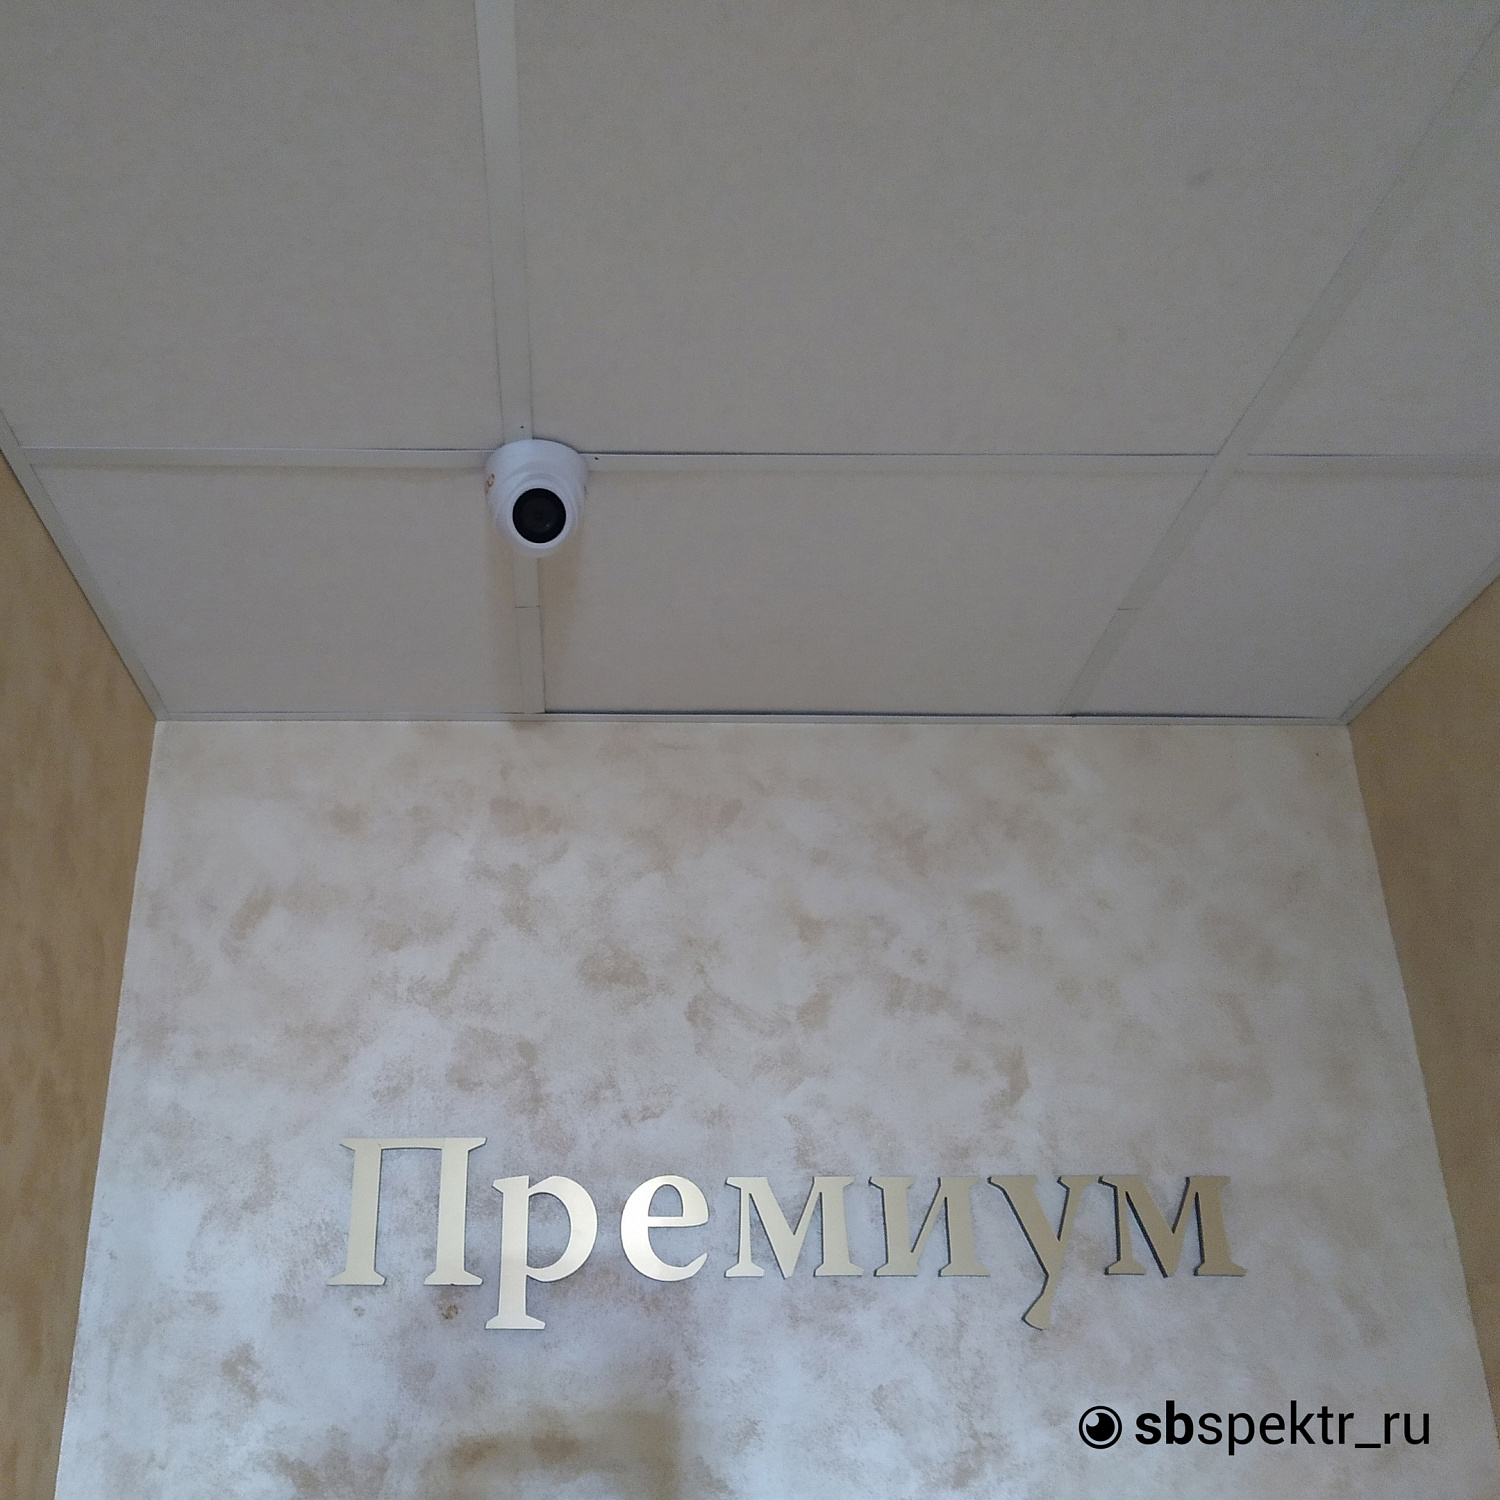 Модернизация видеонаблюдения в центральной гостинице Ижевска